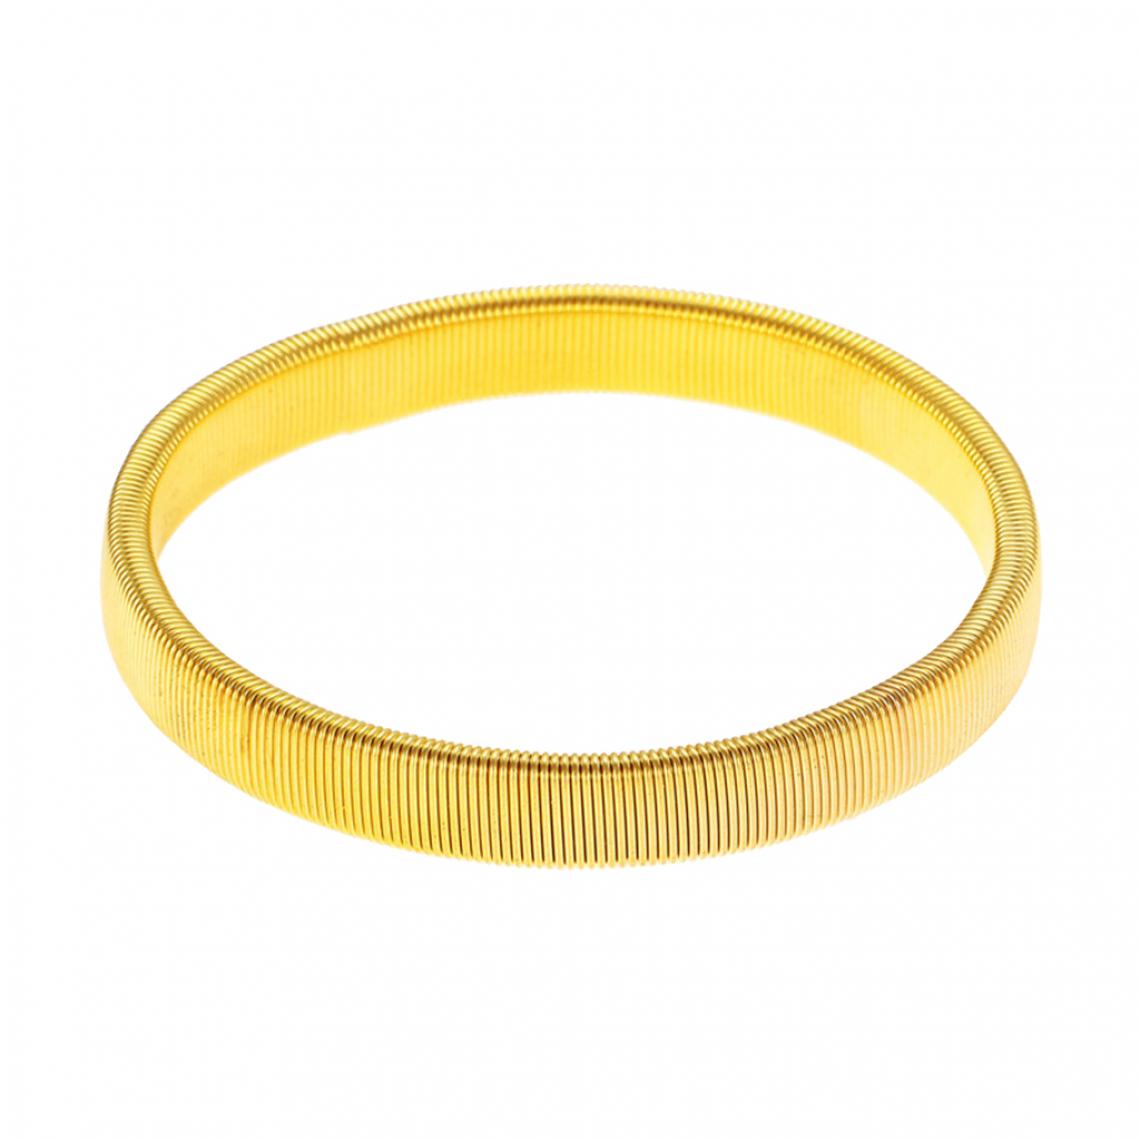 marque generique - Porte-manche pour homme Bracelet élastique en métal anti-dérapant Brassard doré - Bracelet connecté